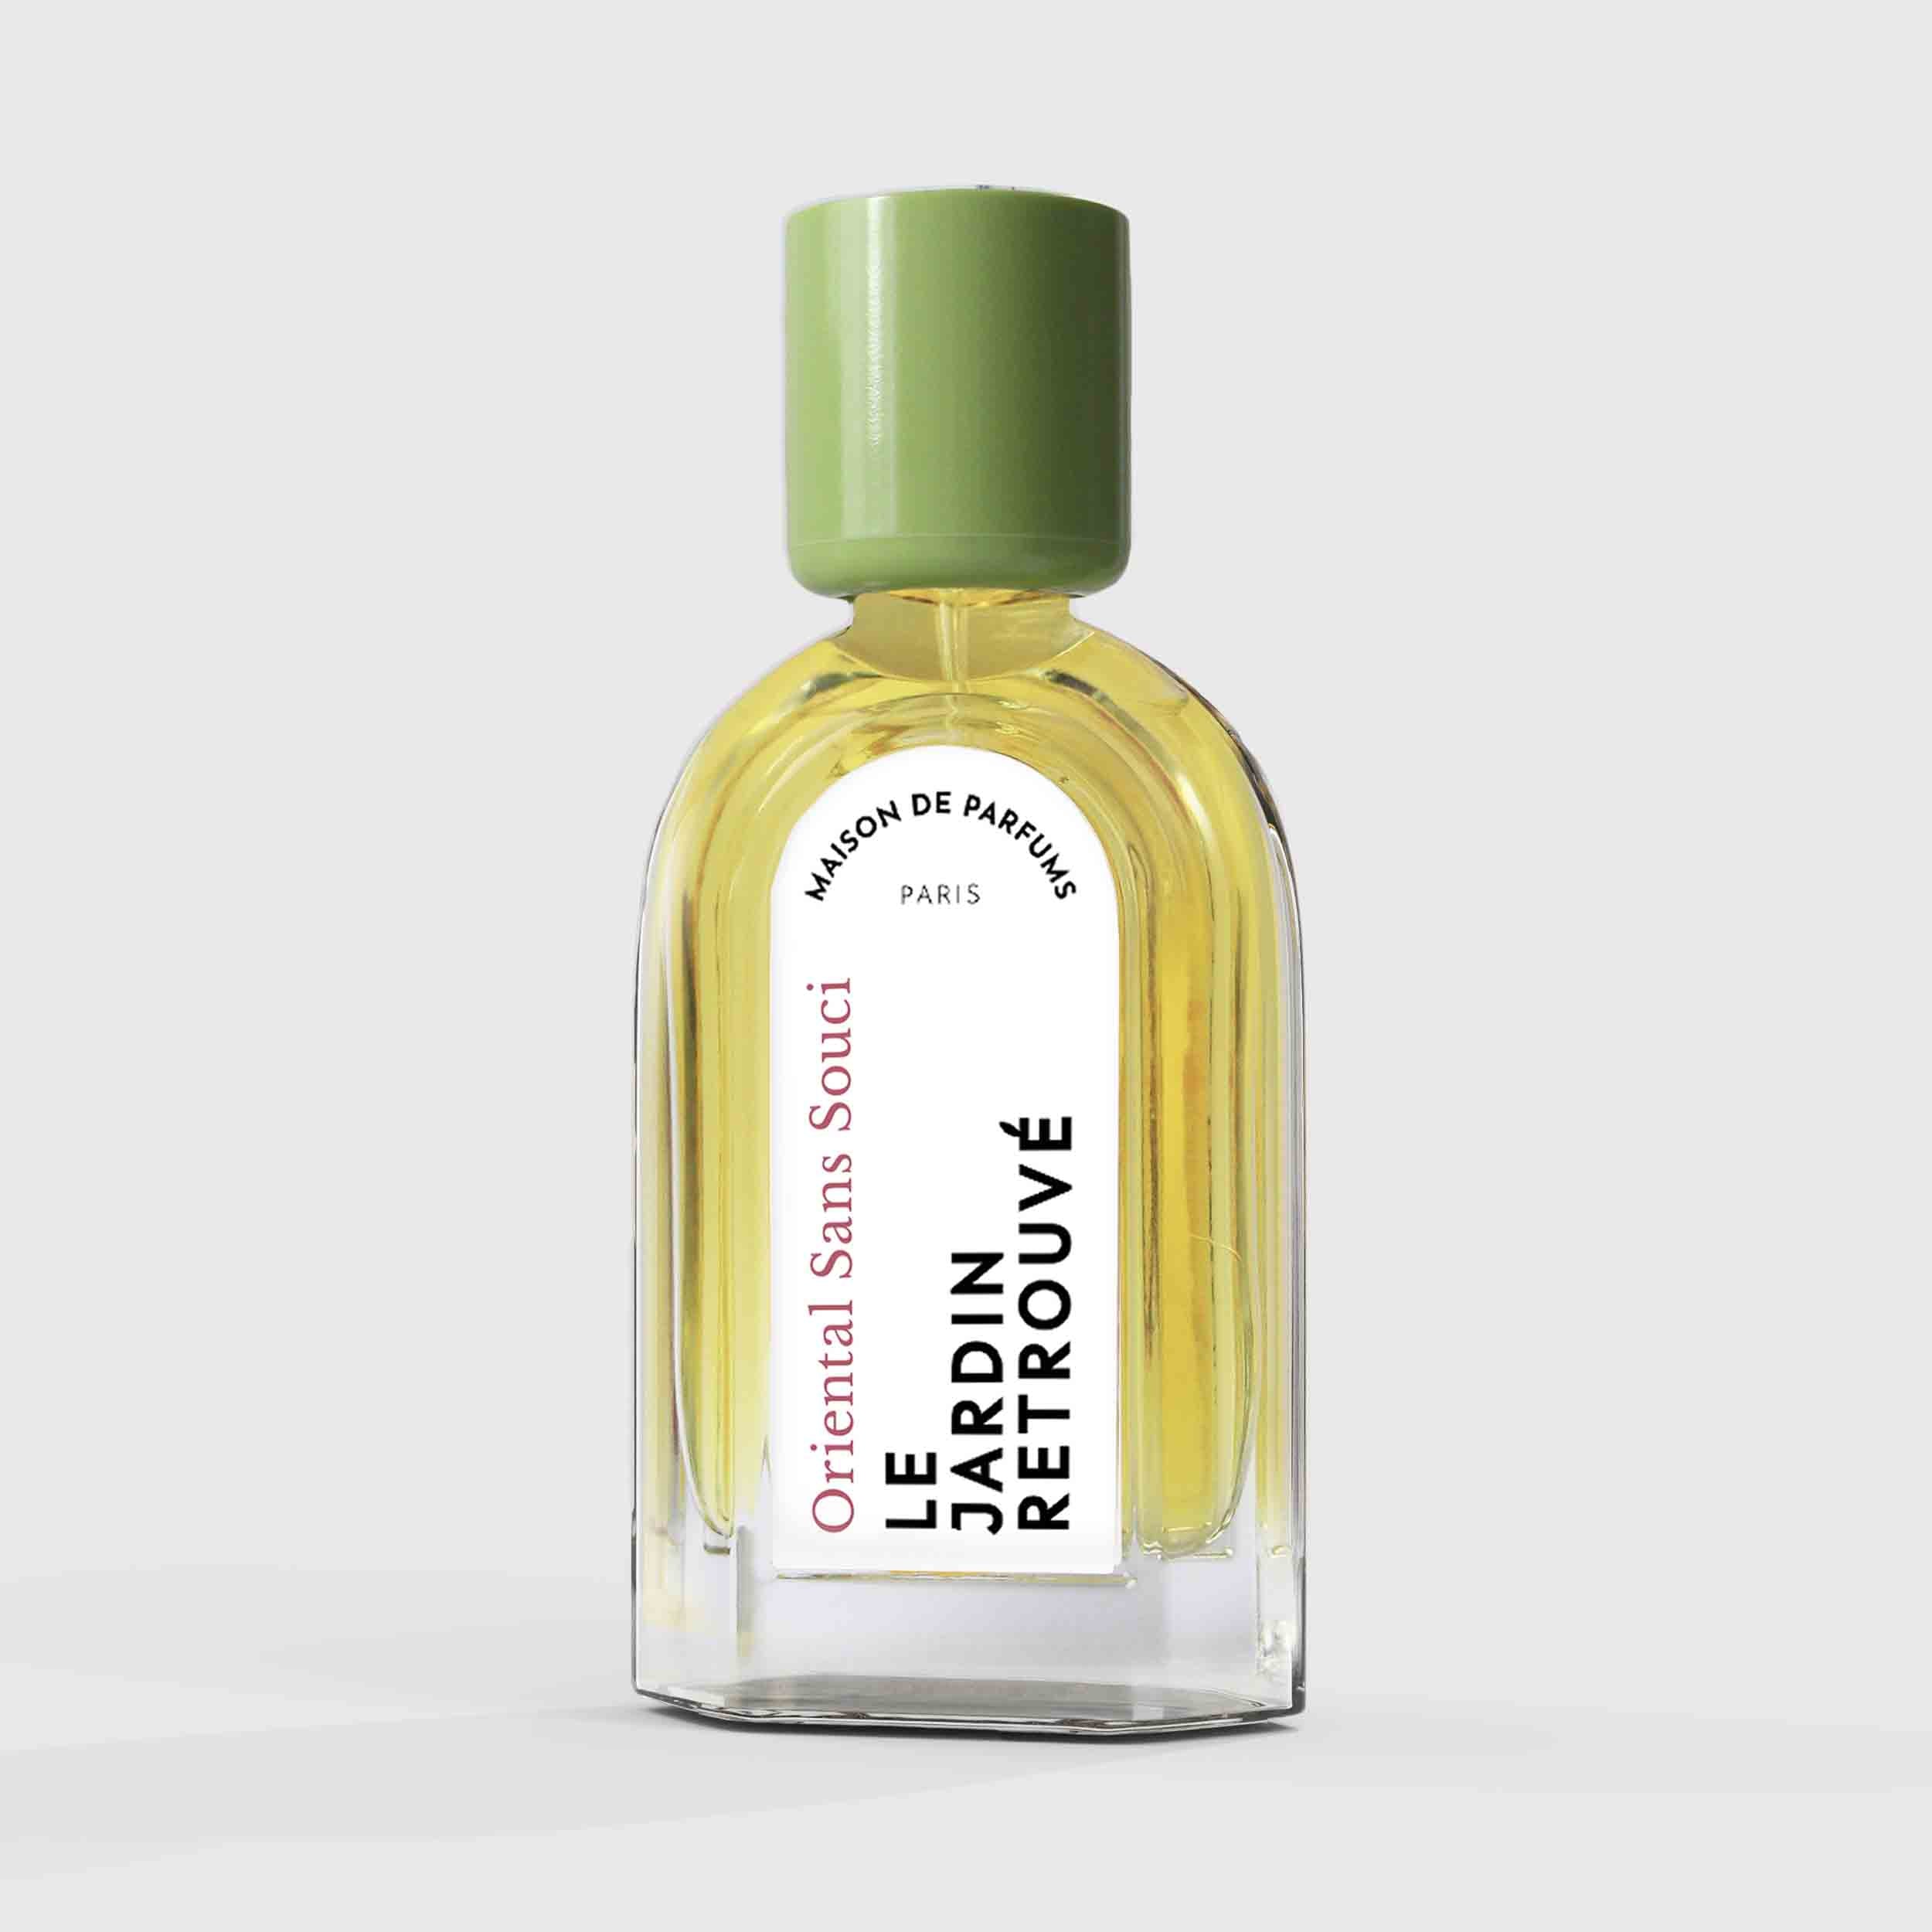 Oriental Sans Souci Eau de Parfum 50ml Bottle by Le Jardin Retrouvé